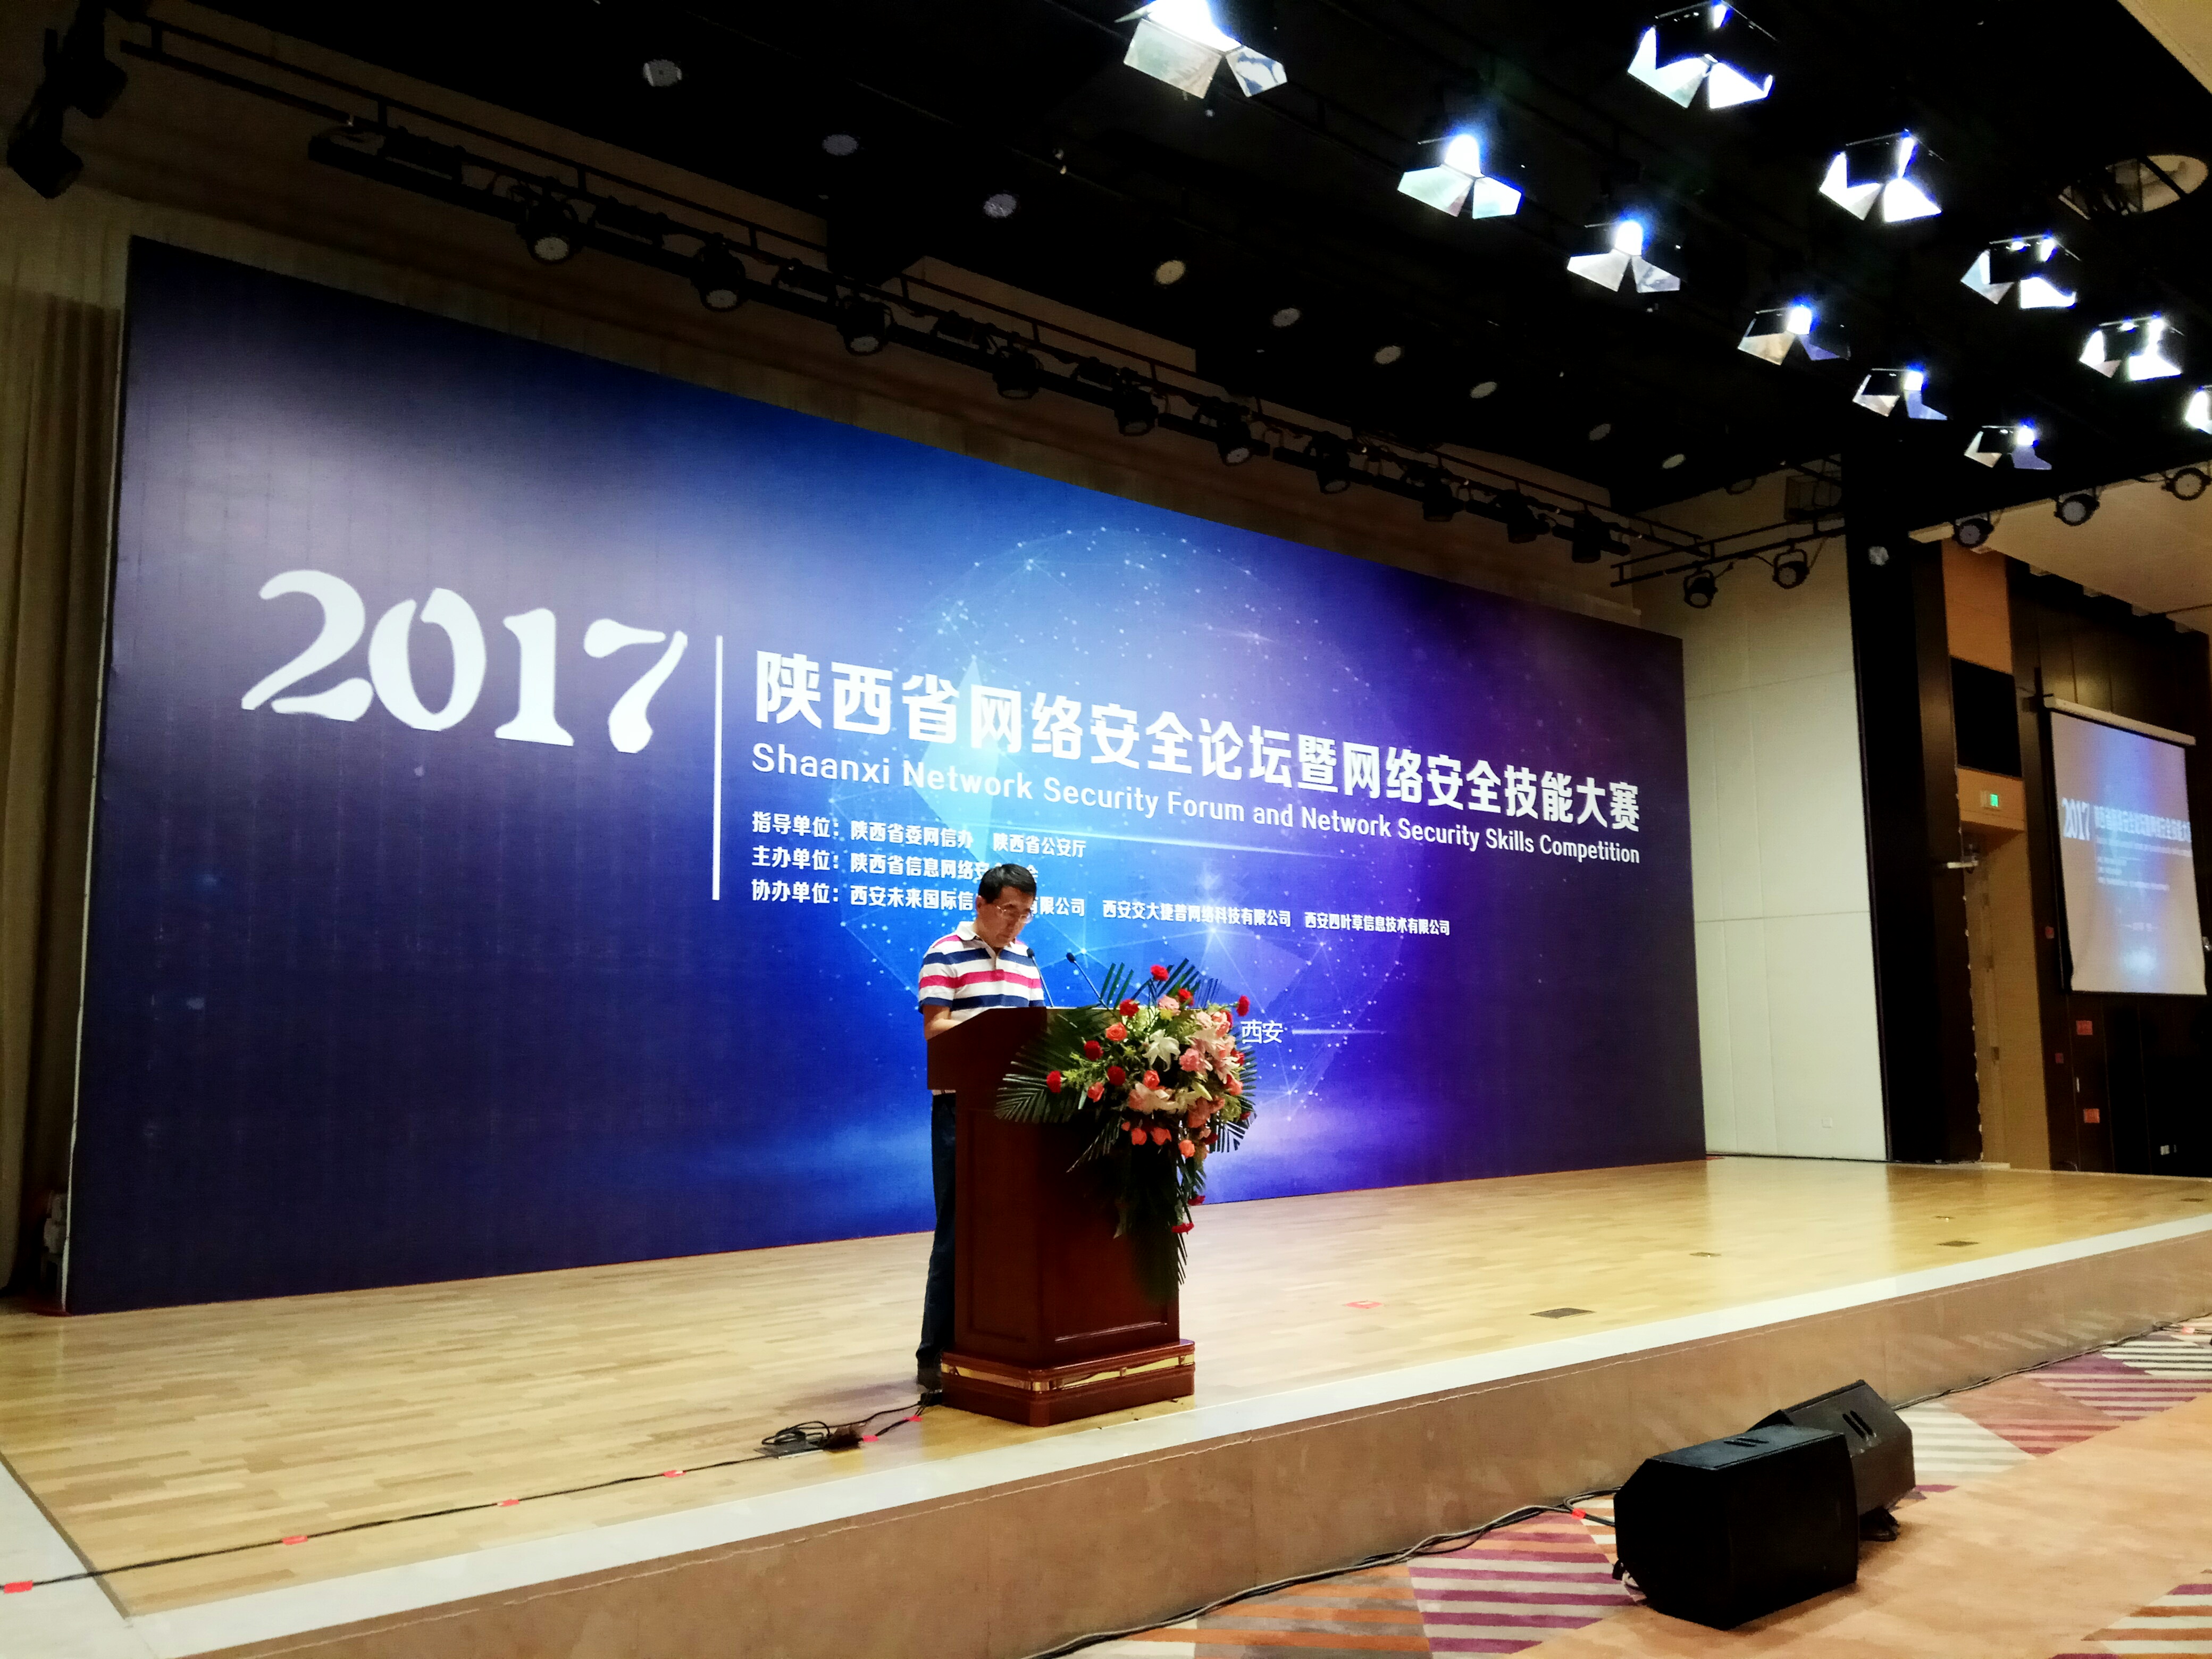 2017陕西省网络安全论坛暨网络安全技能大赛